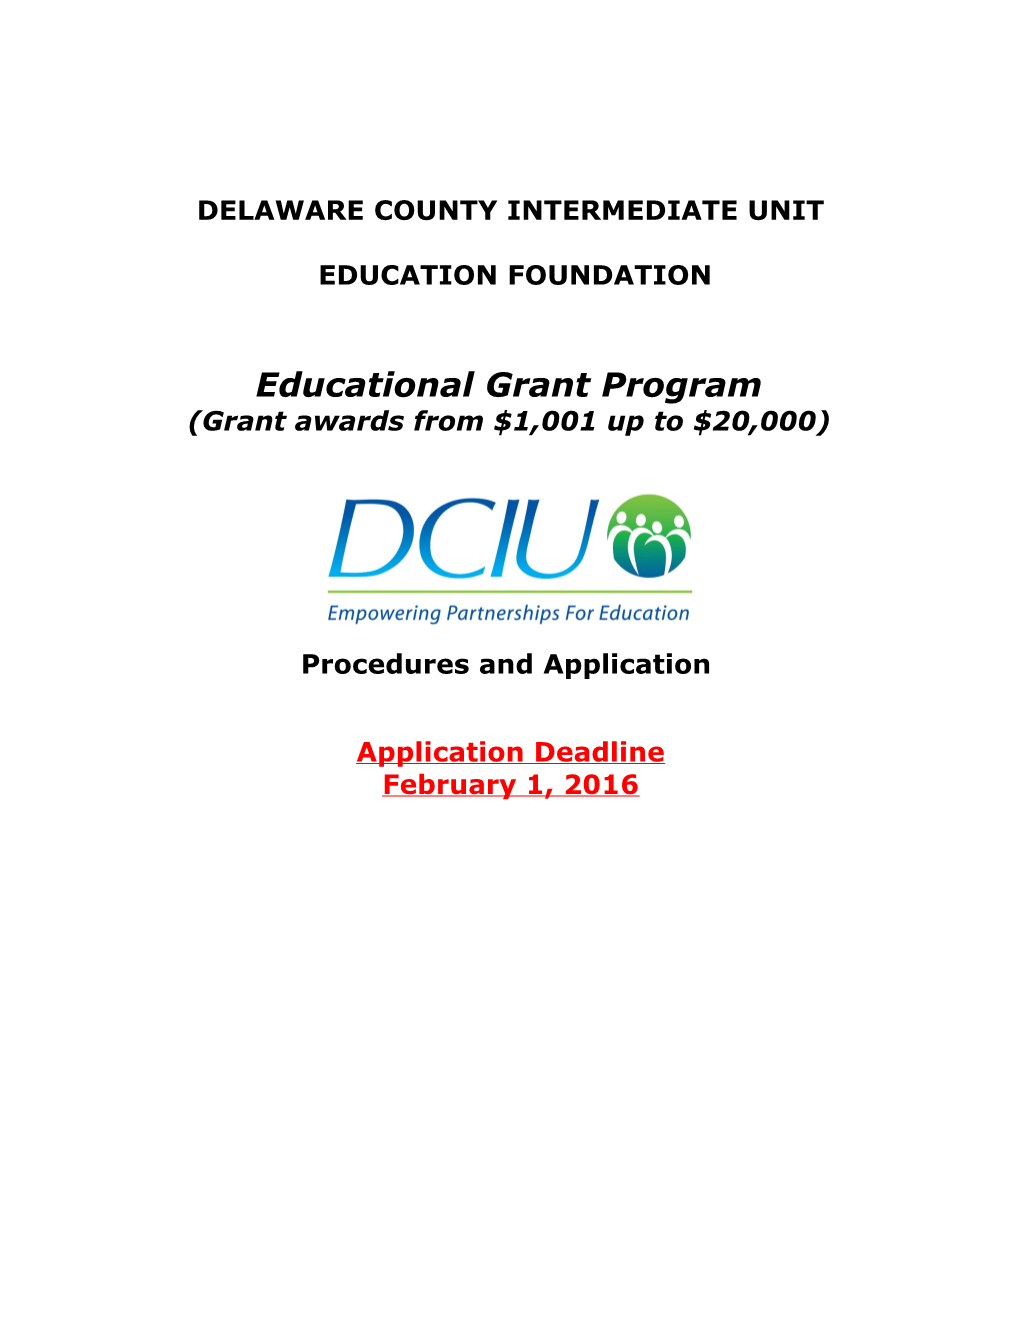 Delaware County Intermediate Unit